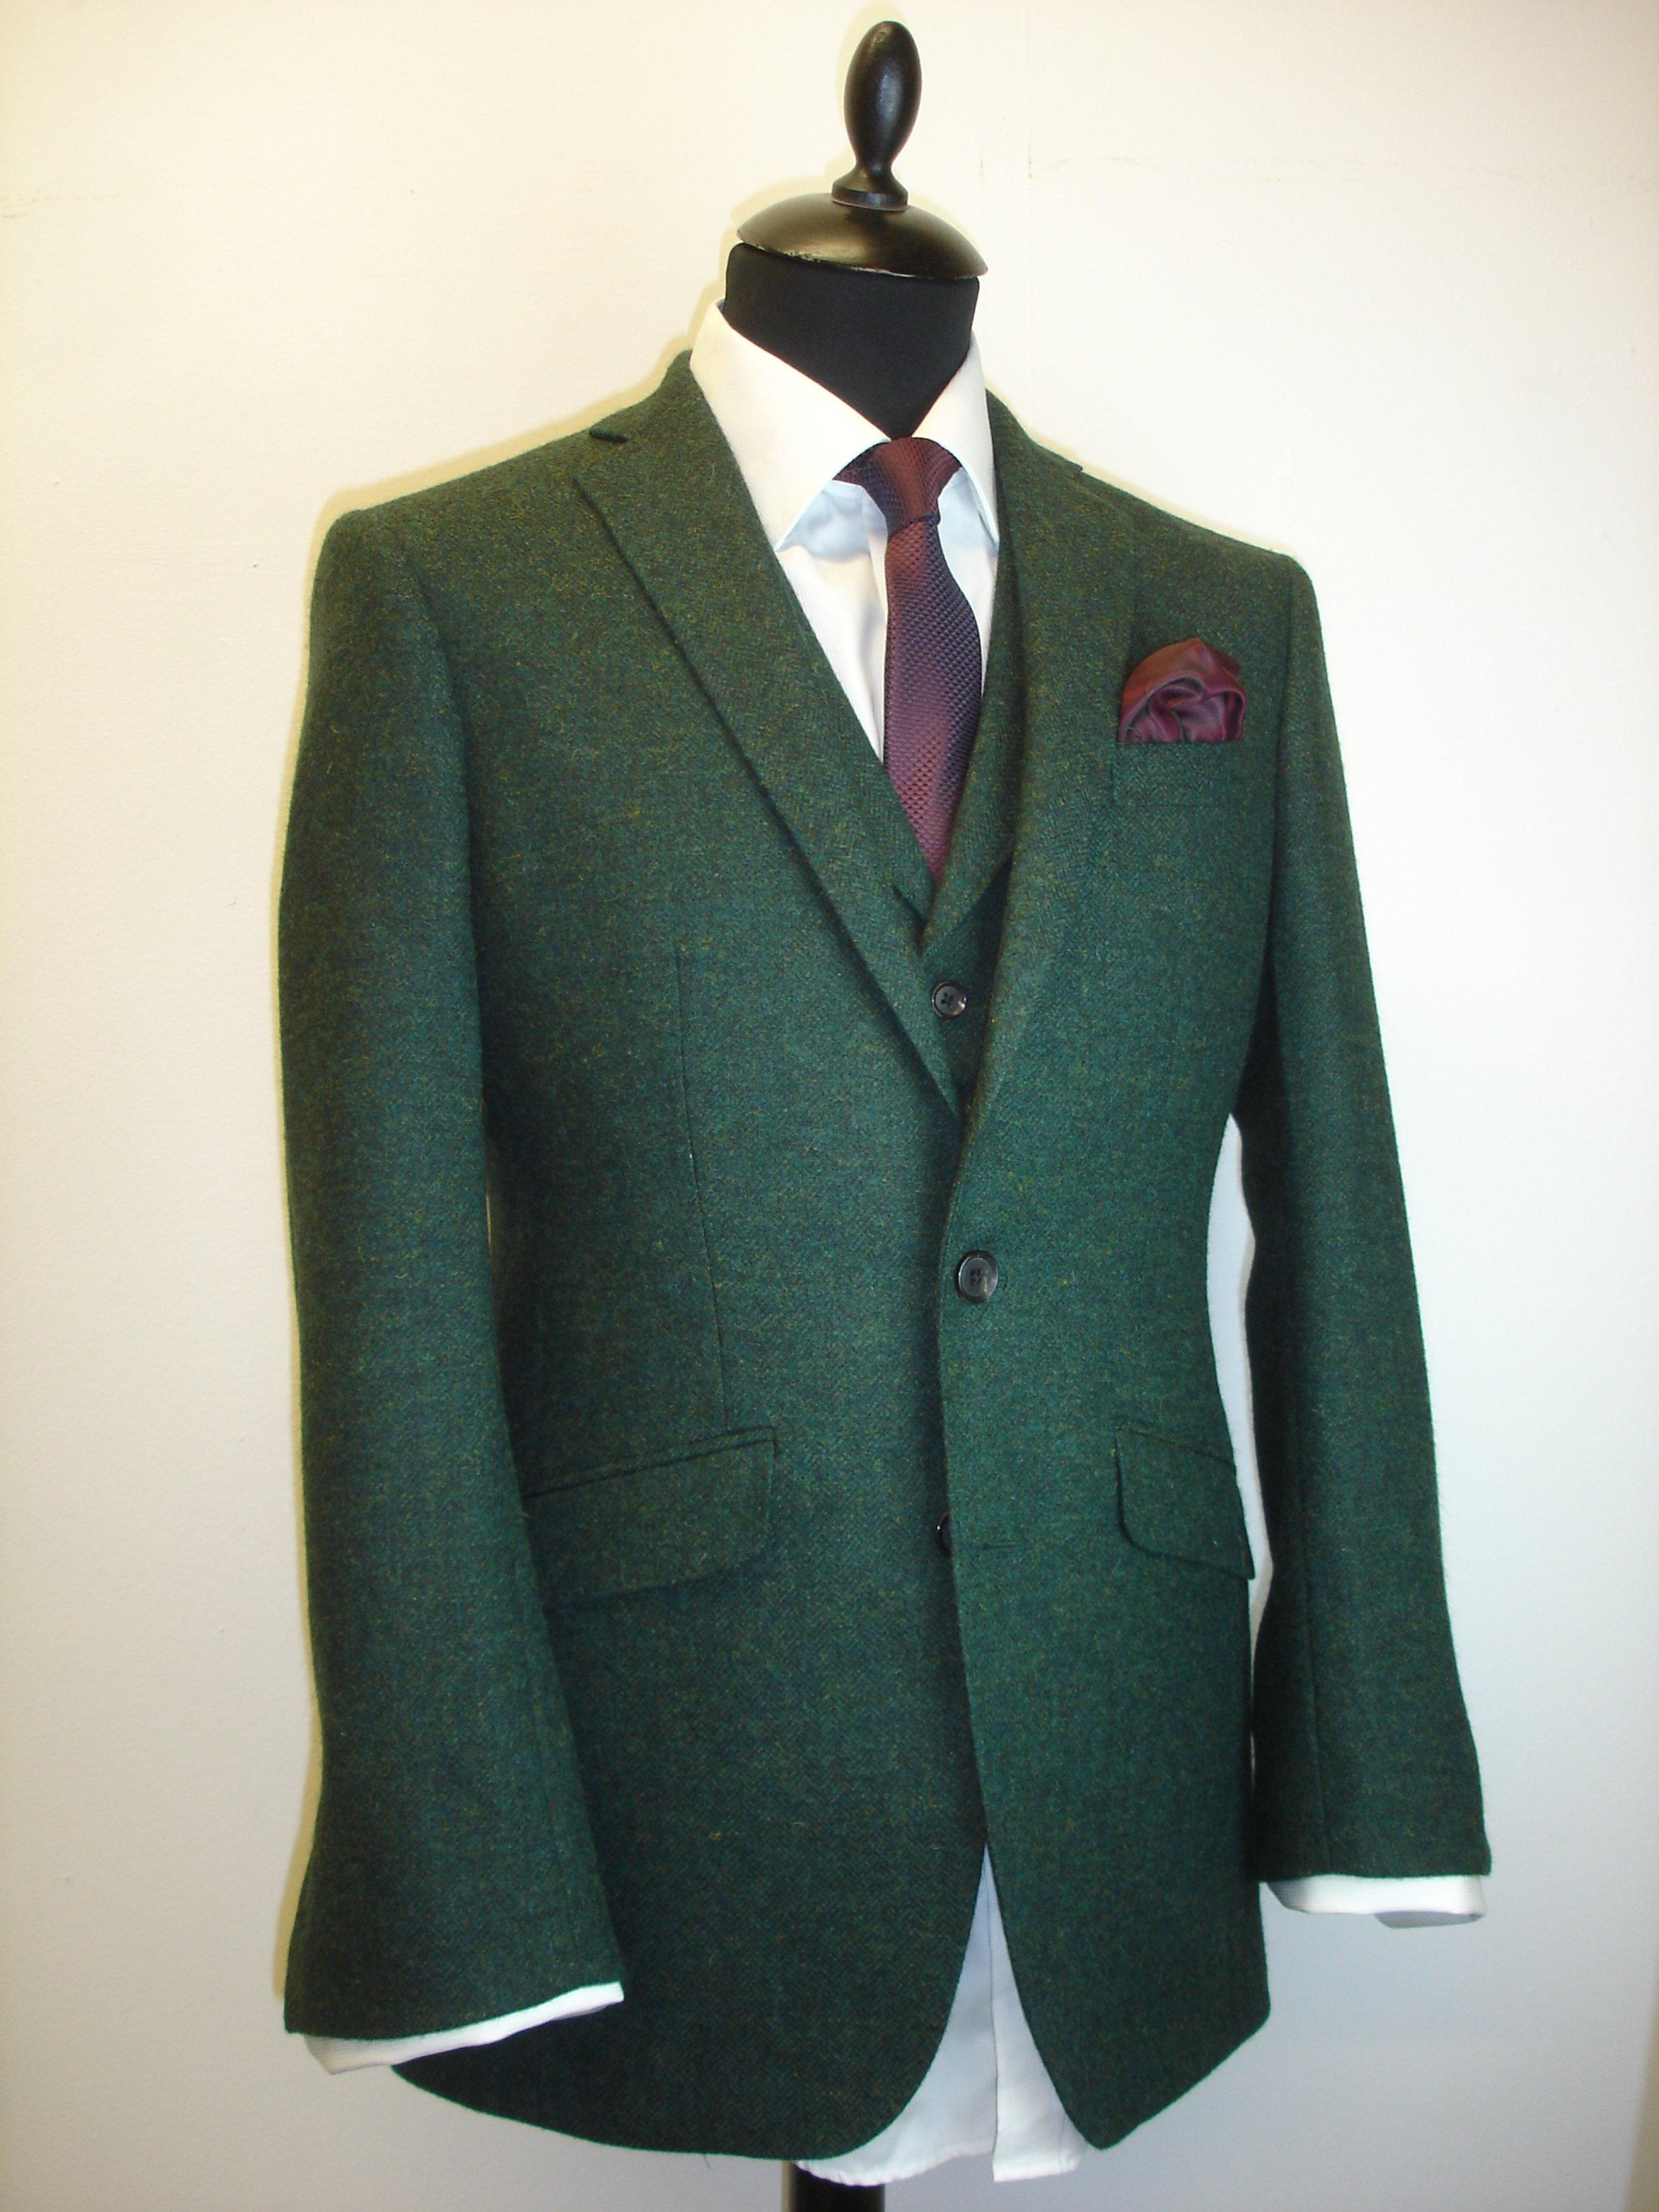 3 piece suit in green yorkshire herringbone tweed (13).JPG